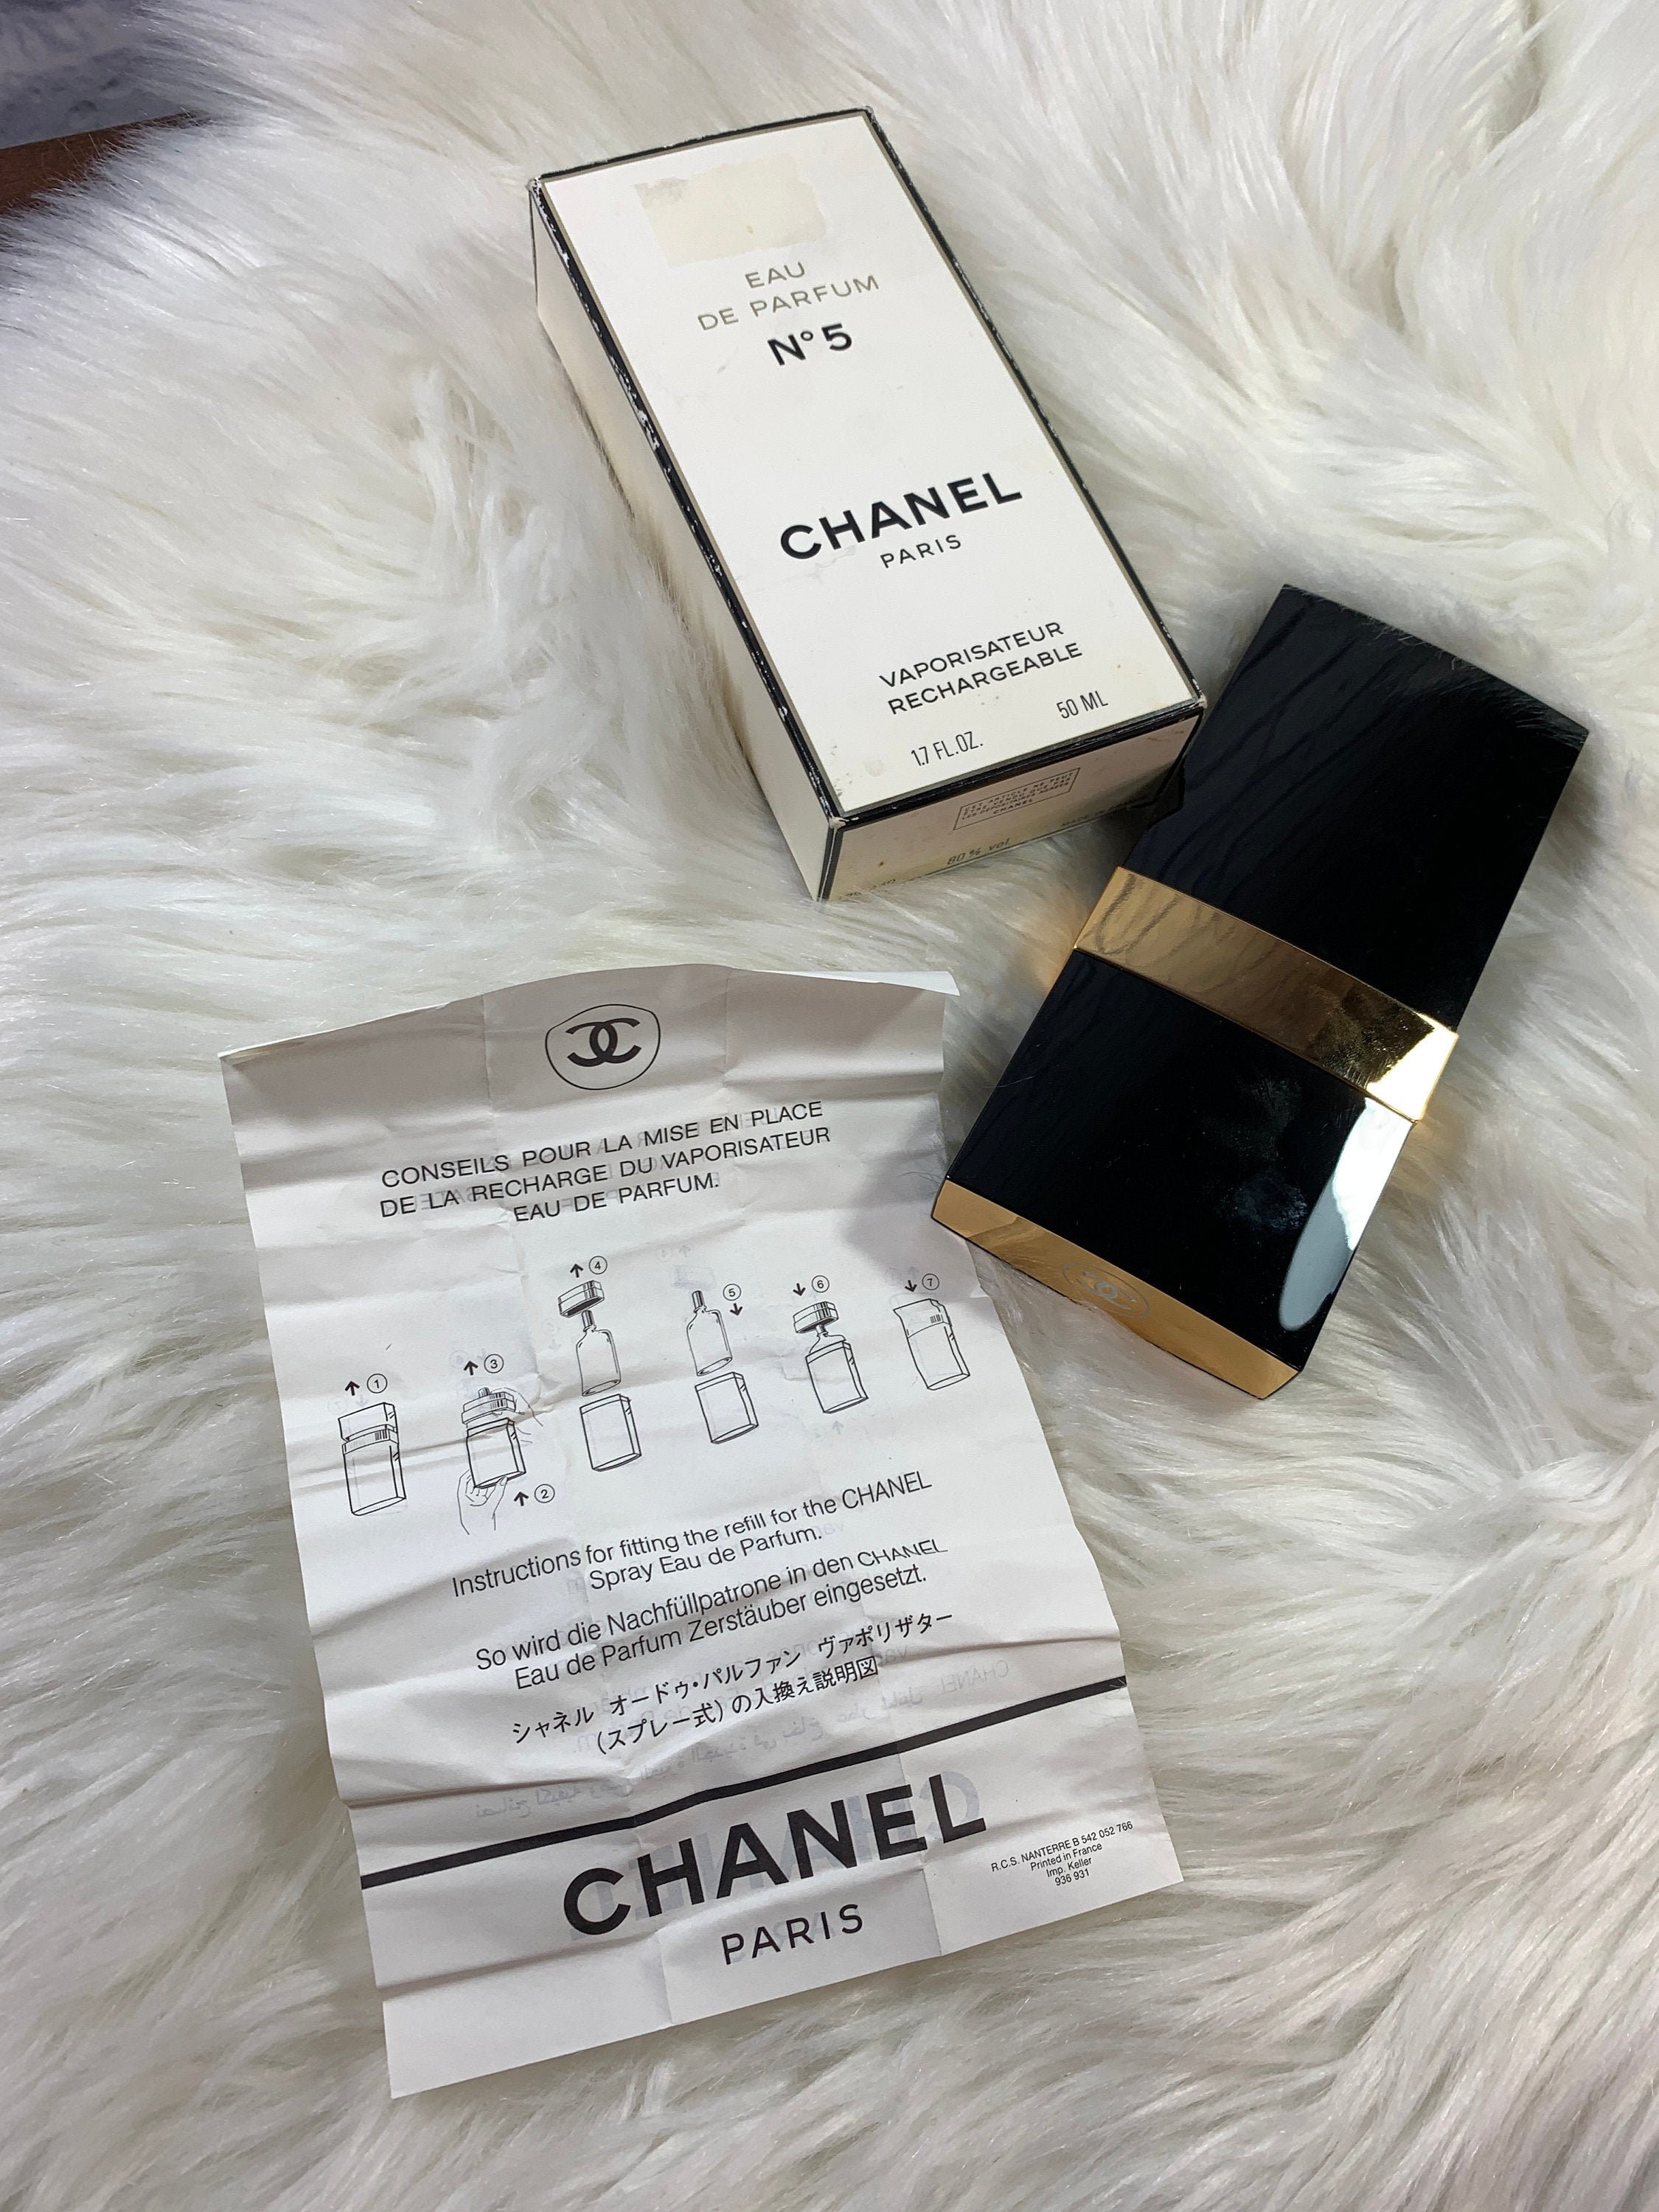 Chanel No 5 Eau De Toilette Vaporisateur Spray For Women 50 ml / 1.7 oz 